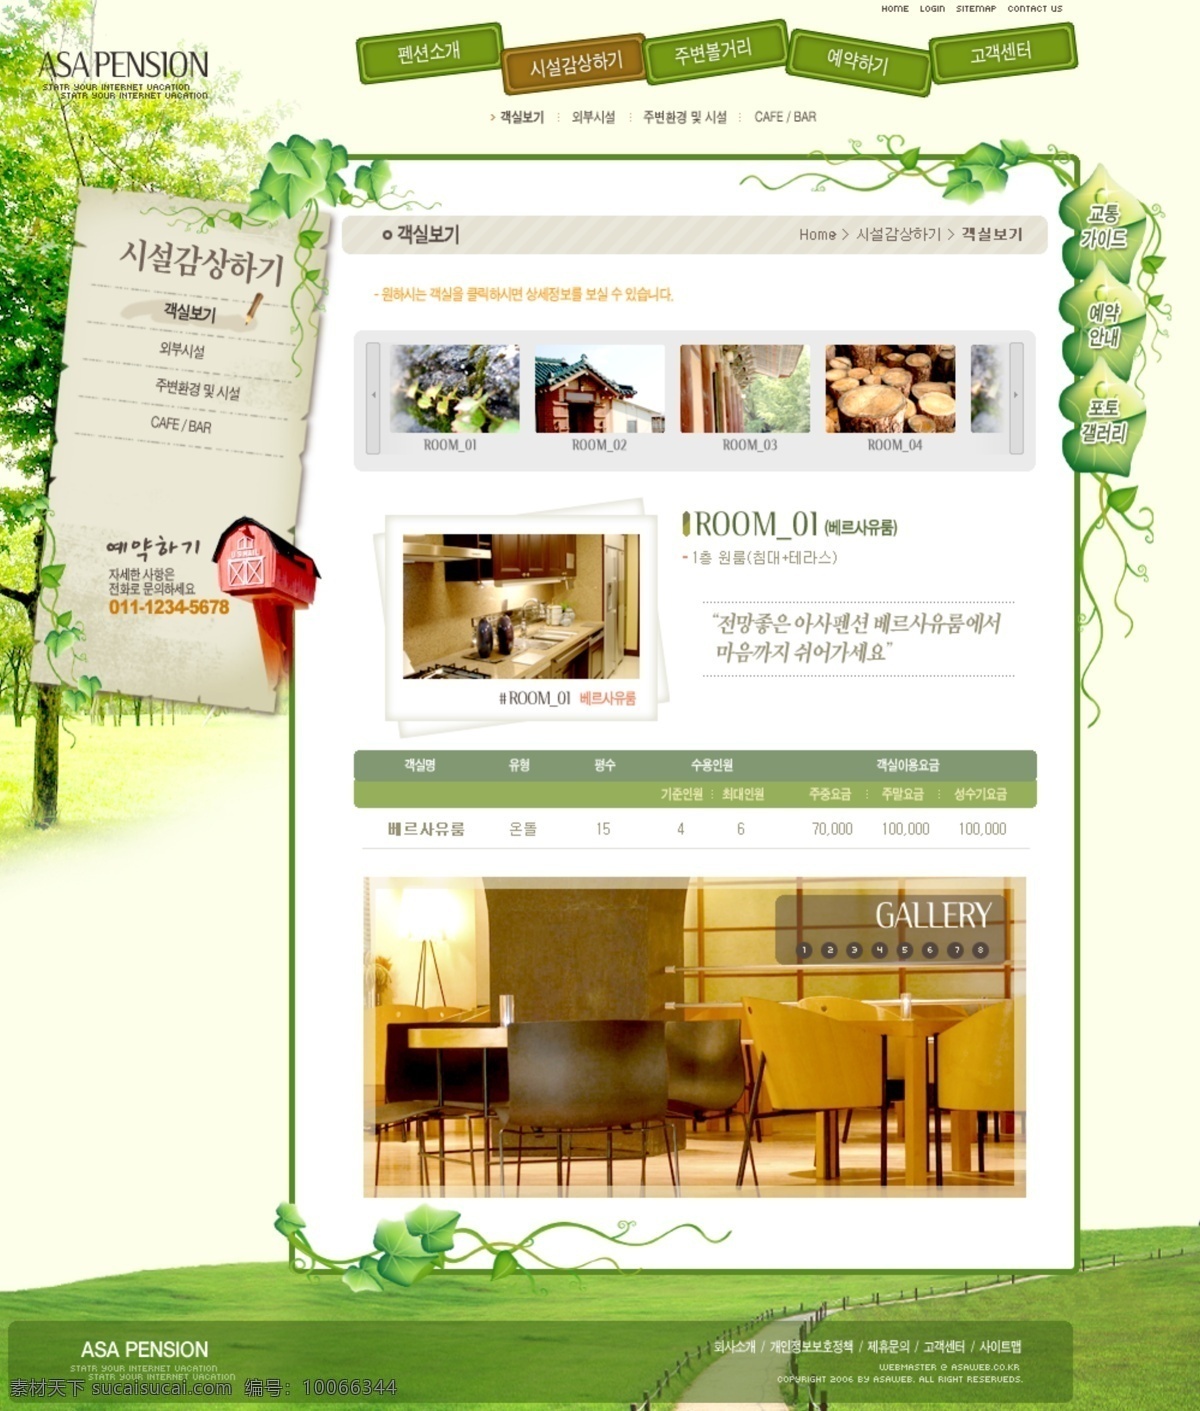 旅游 类 网站 模板 首页 宾馆 类网站模板 白色